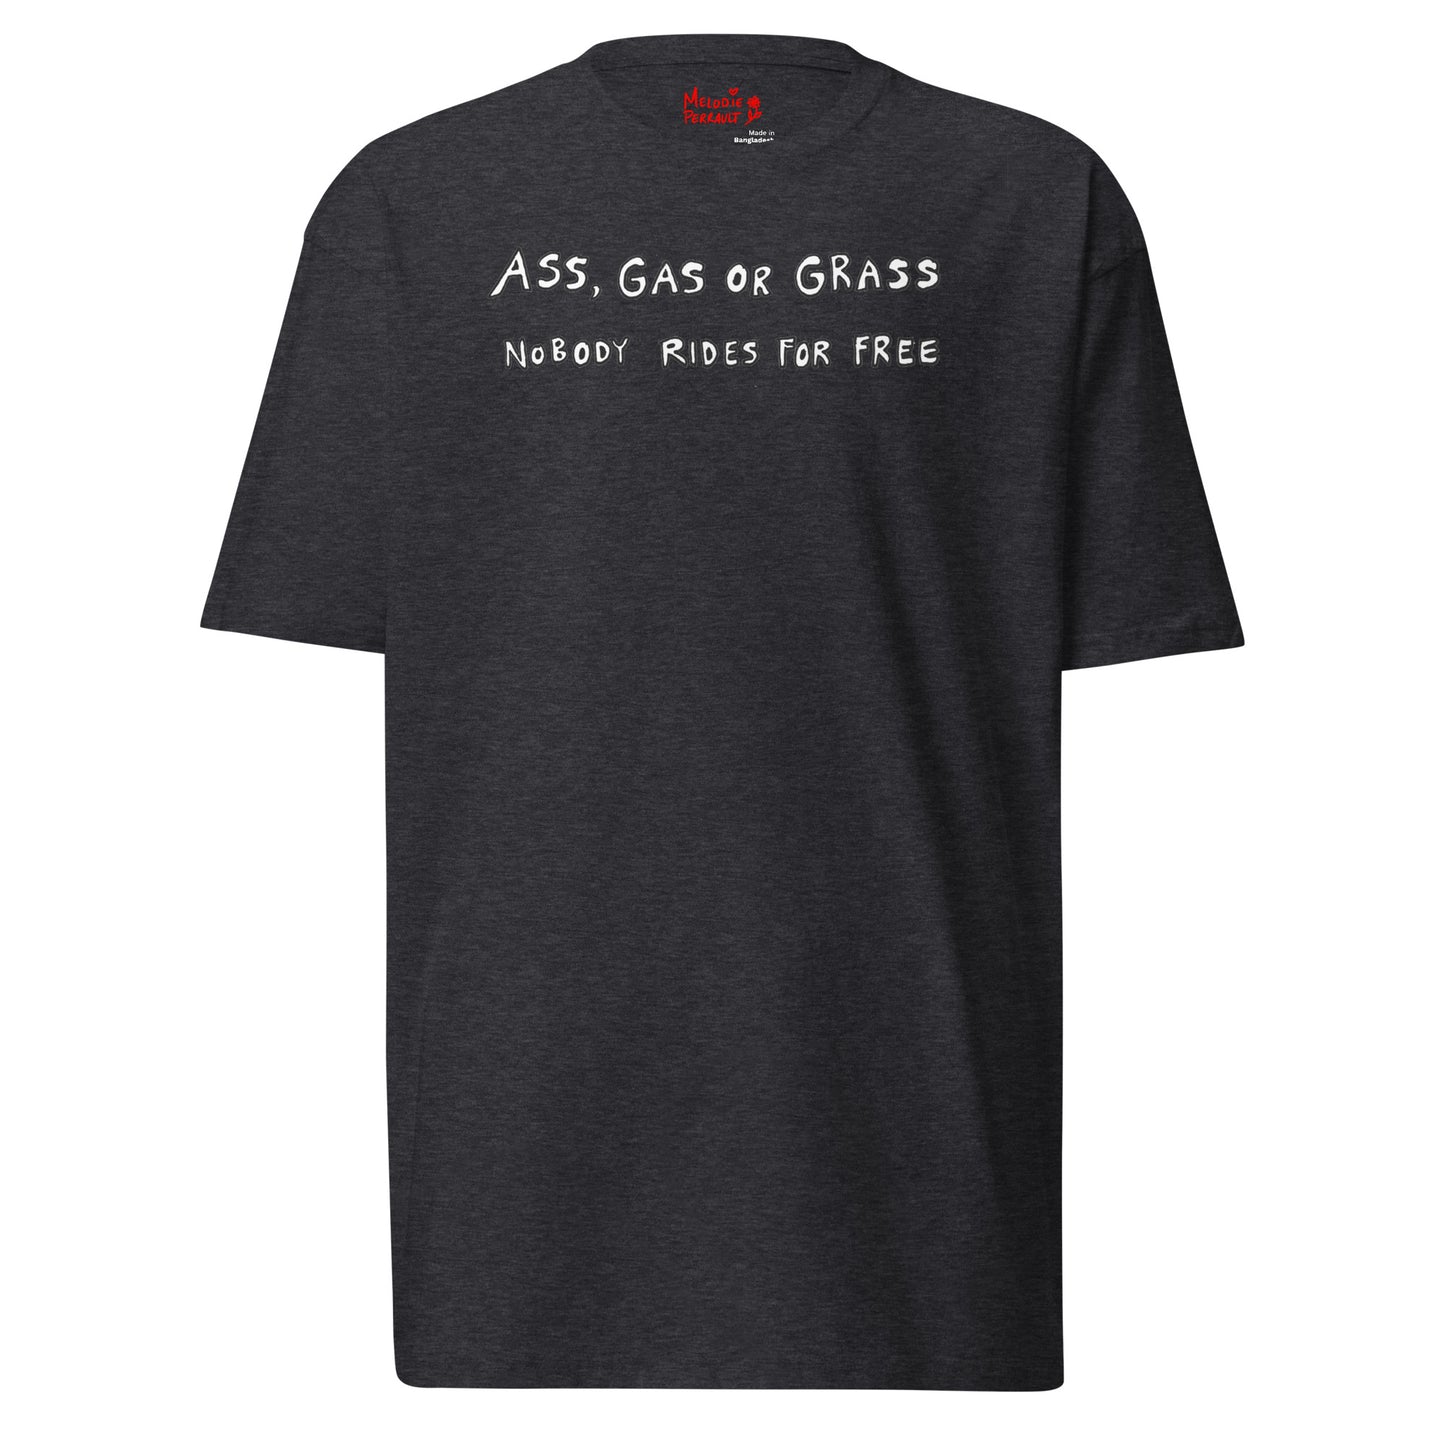 " Ass, Gas Or Grass " Men’s premium heavyweight tee